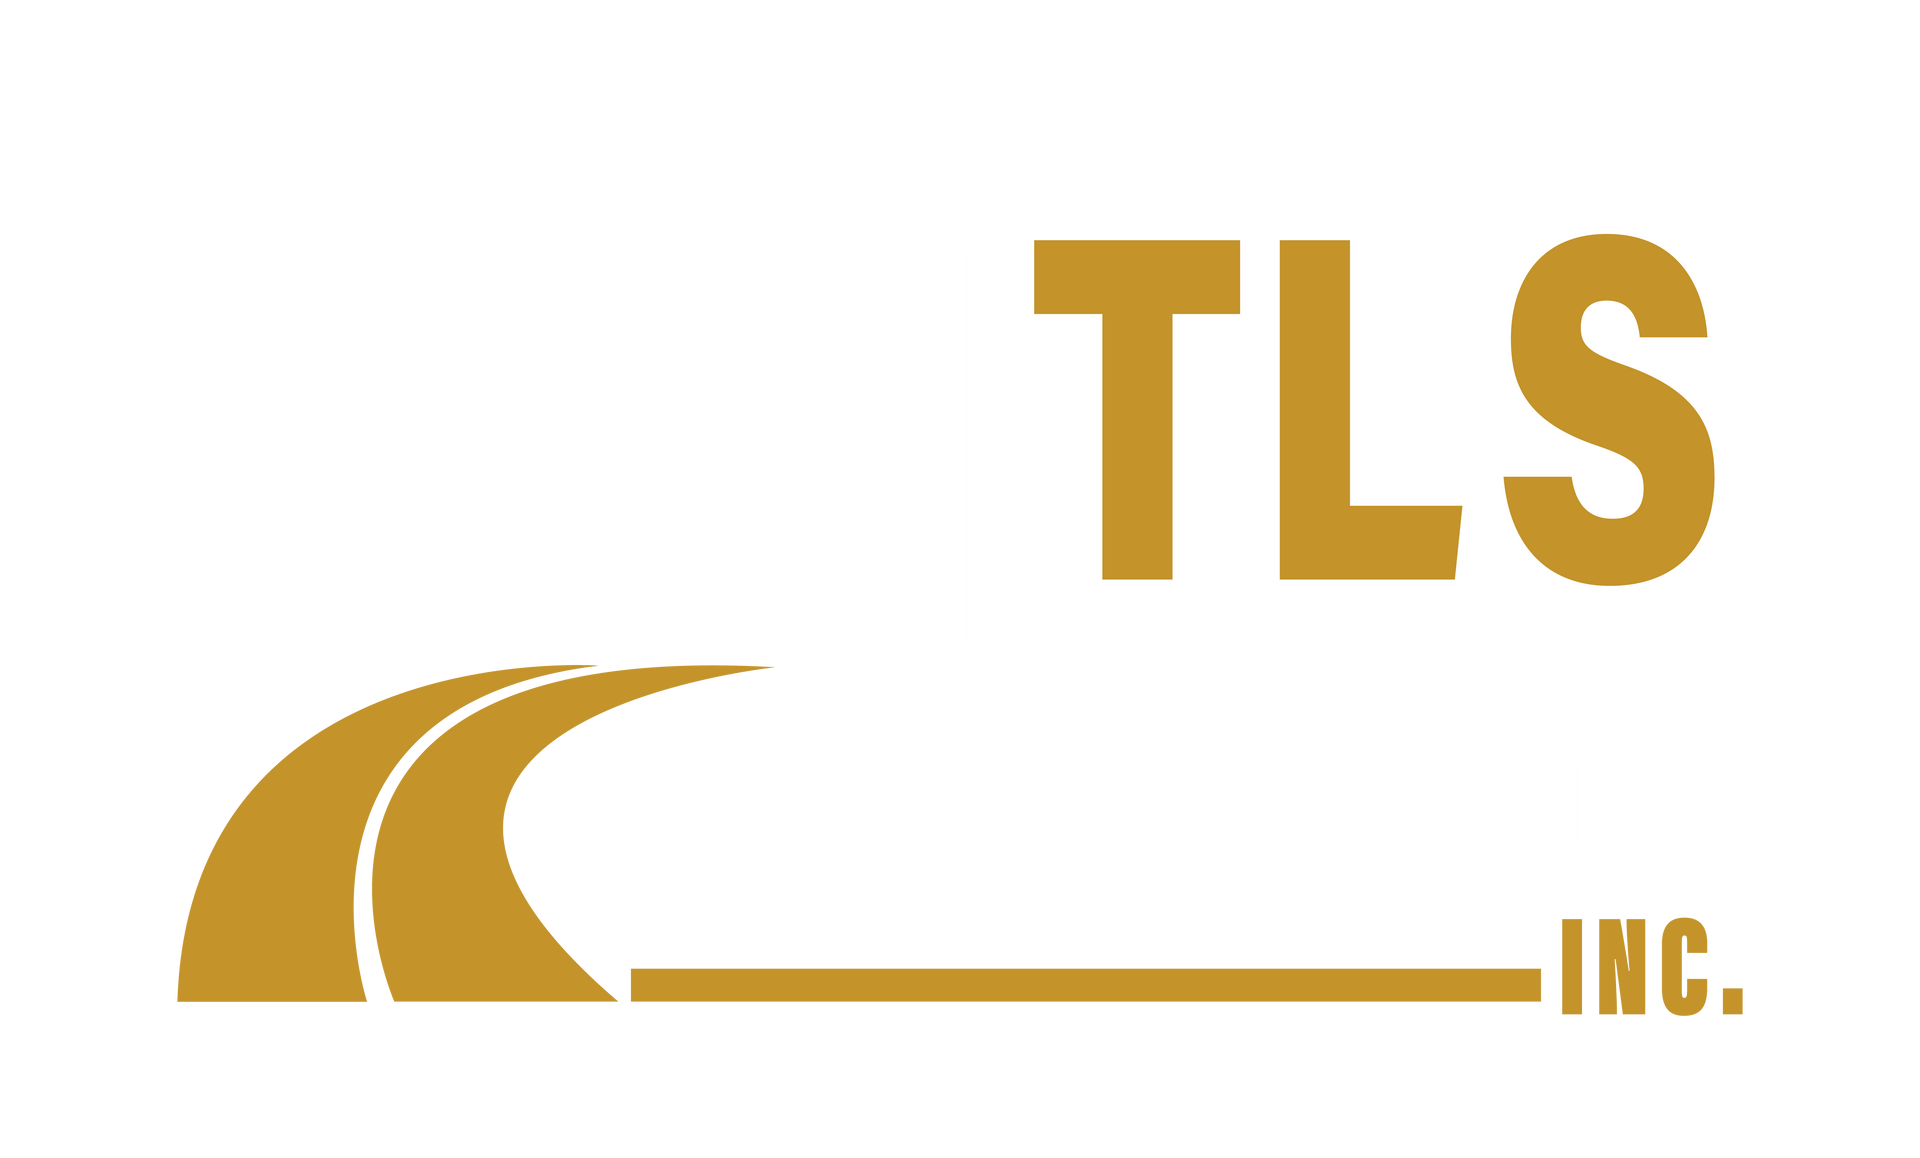 TLS CONSTRUCTION INC